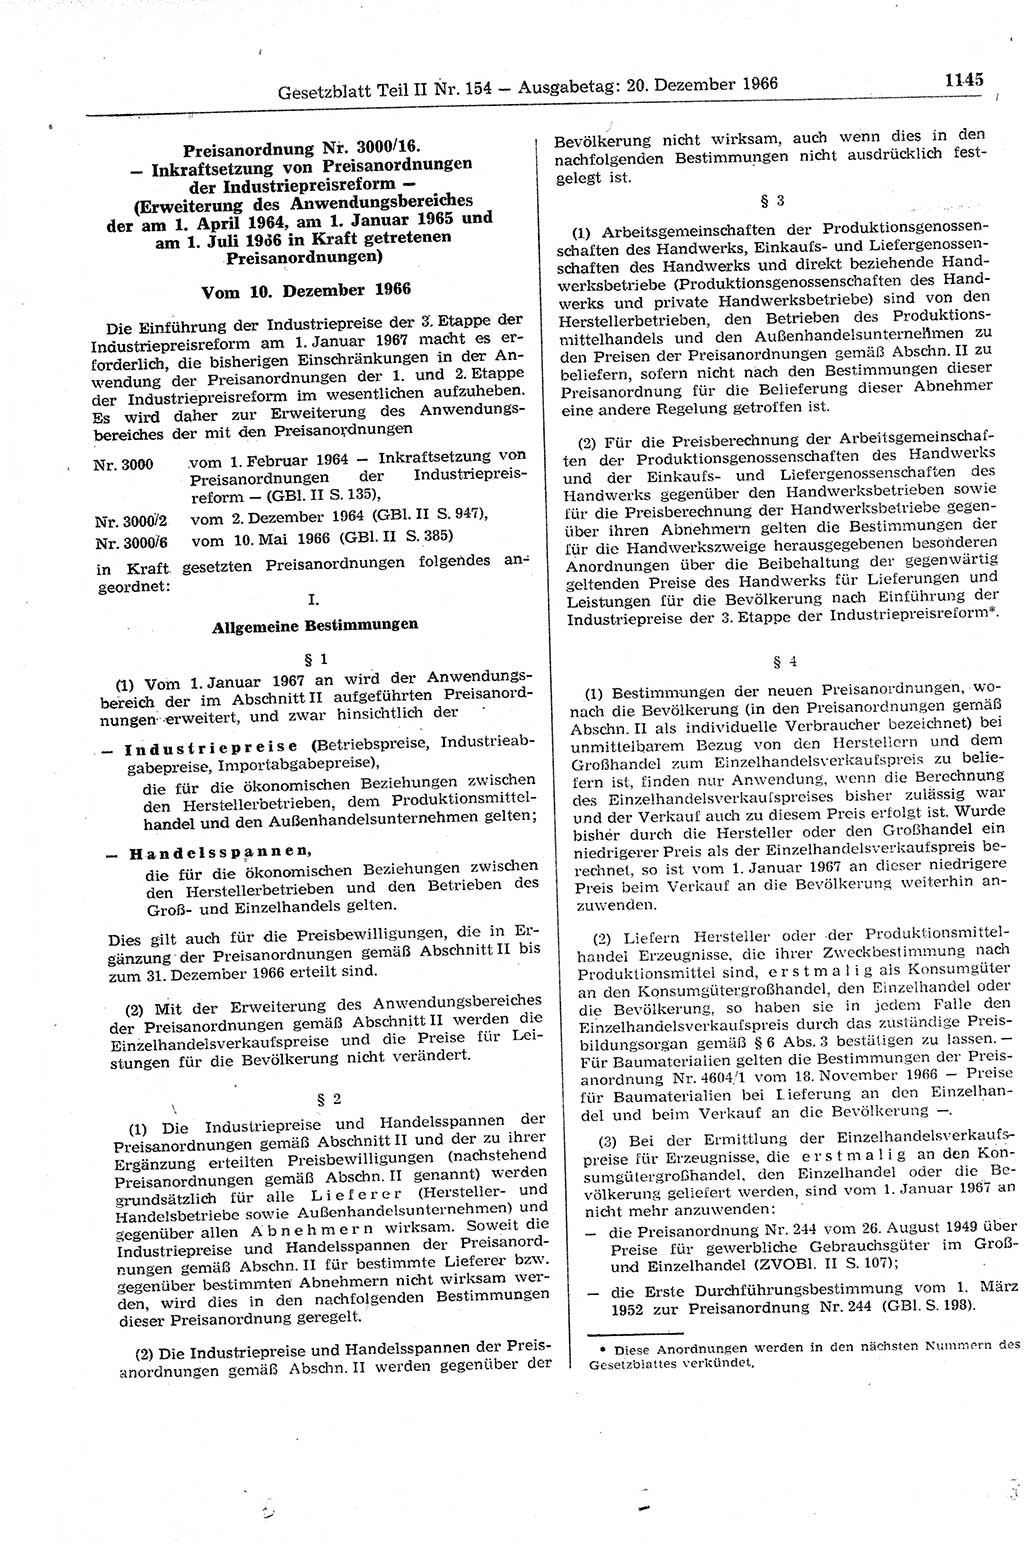 Gesetzblatt (GBl.) der Deutschen Demokratischen Republik (DDR) Teil ⅠⅠ 1966, Seite 1145 (GBl. DDR ⅠⅠ 1966, S. 1145)